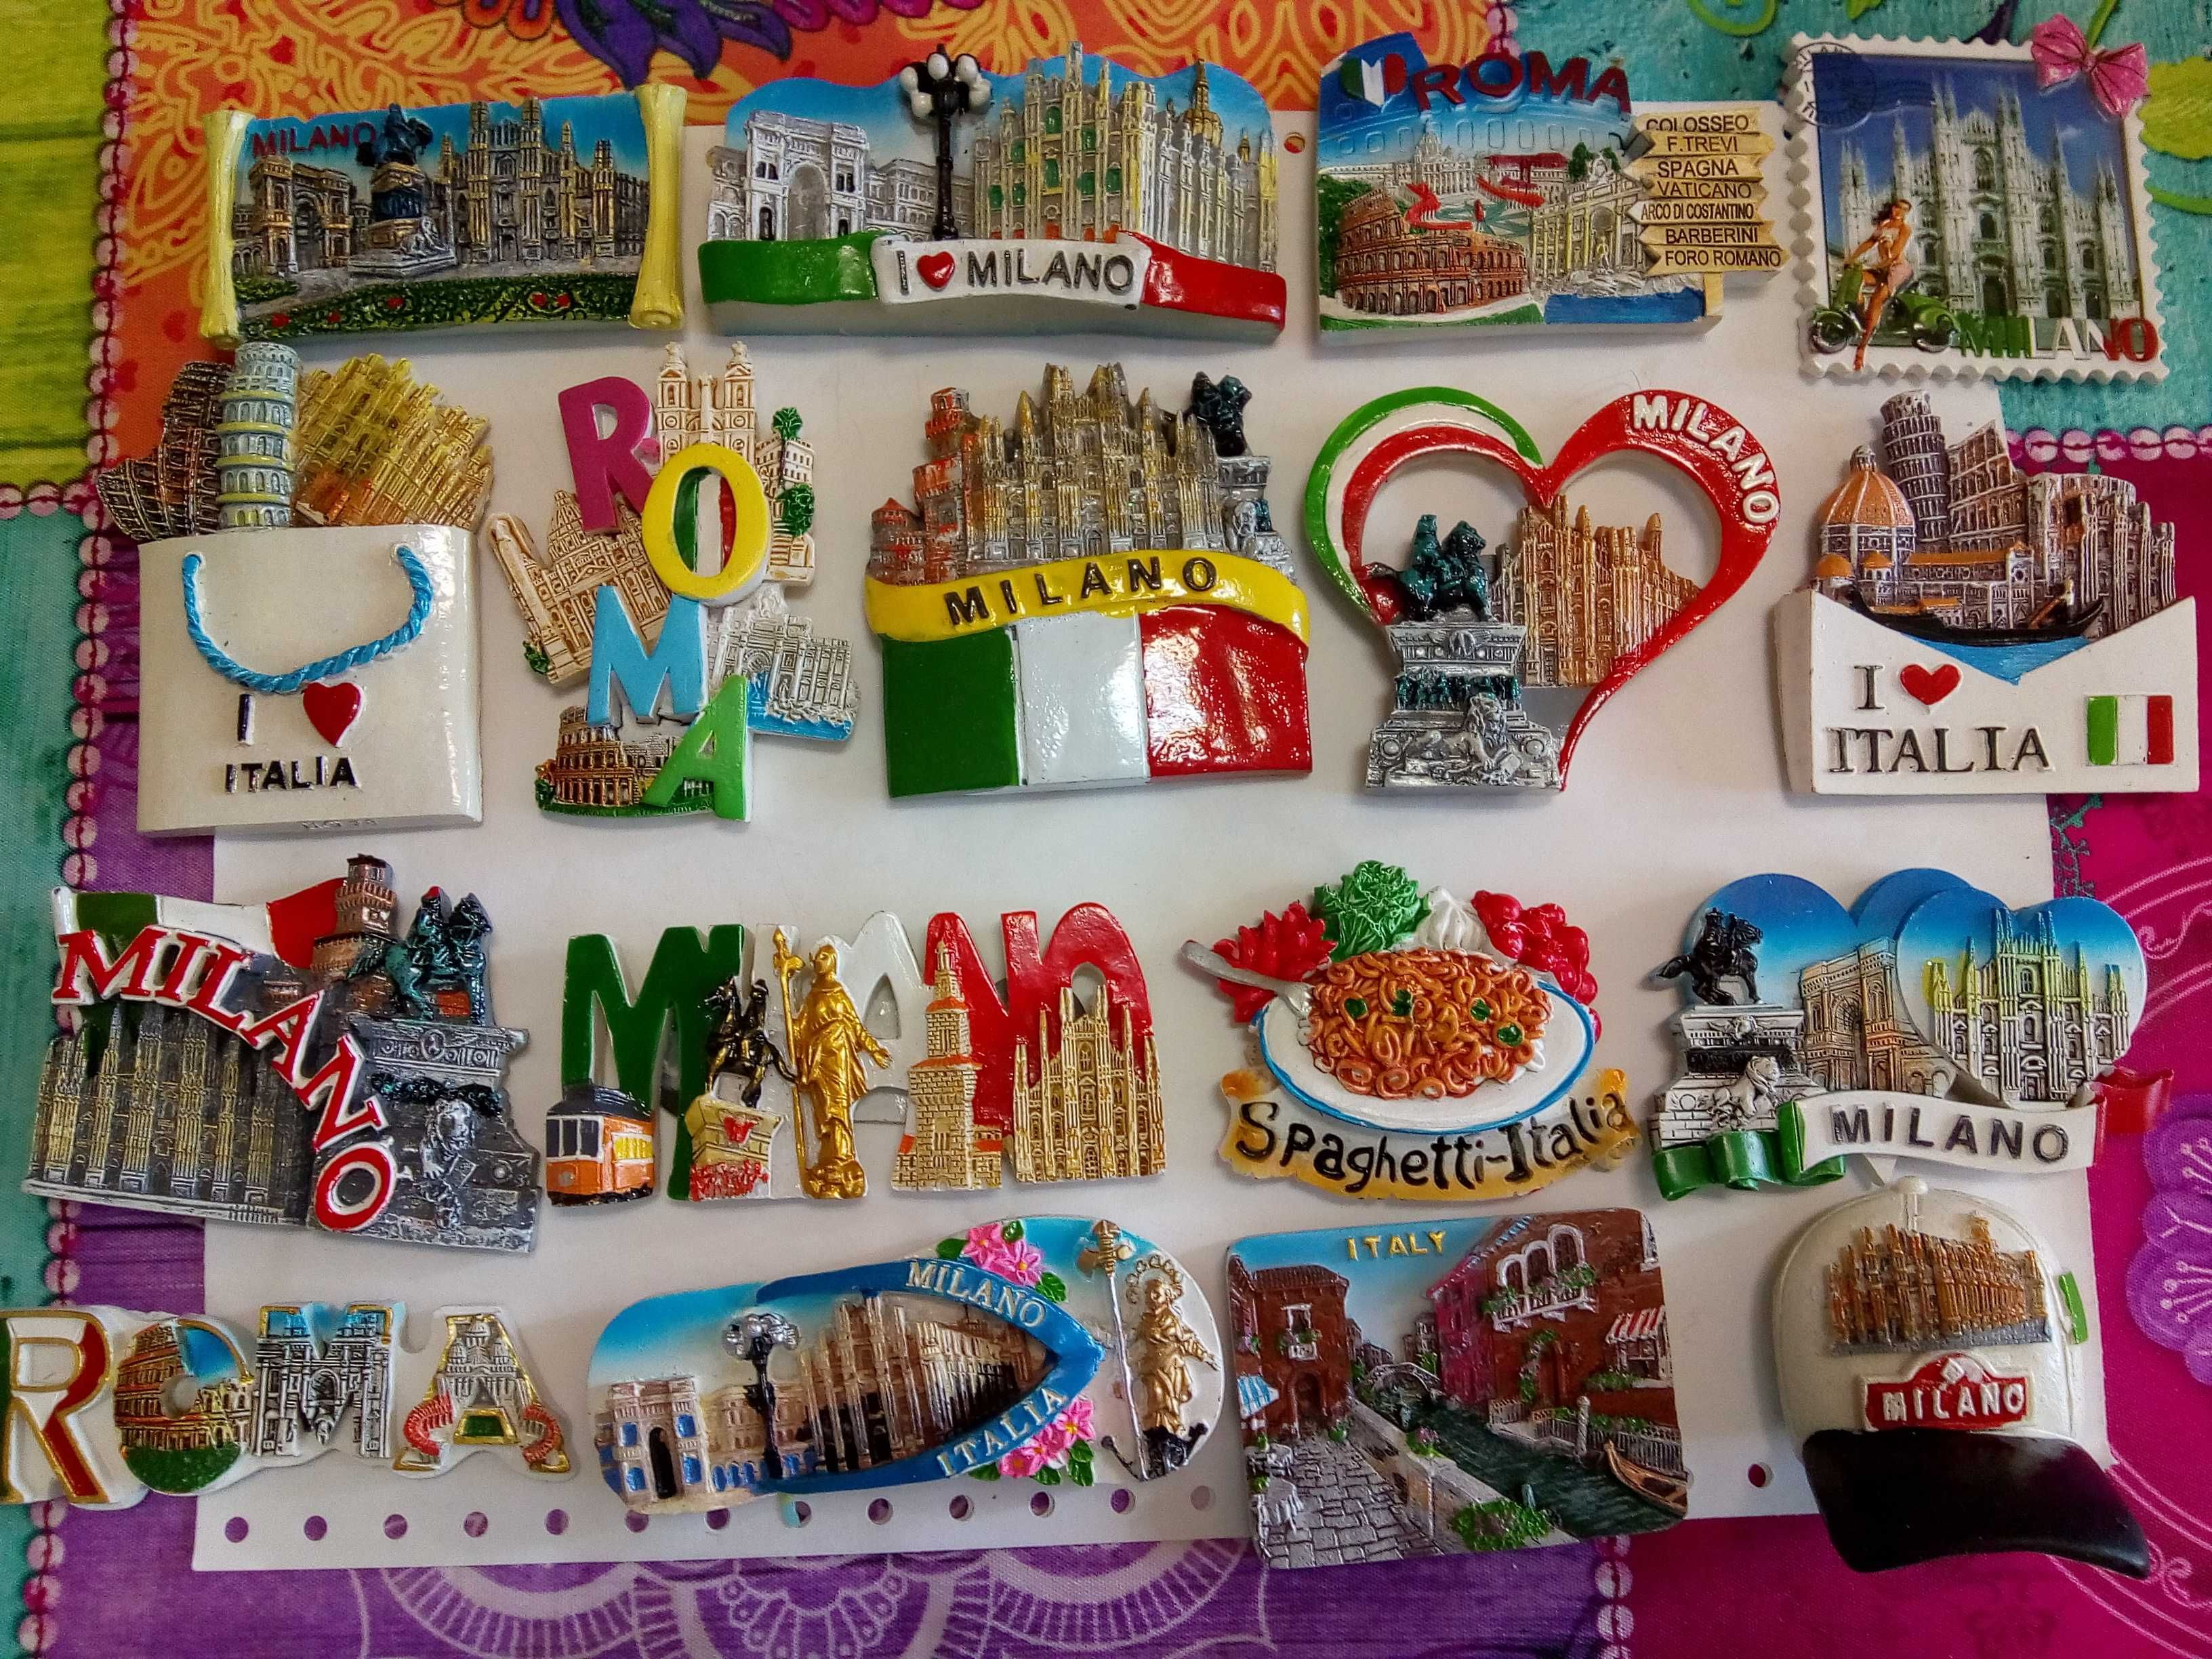 Imanes magnets de Itália vendo 1.99€